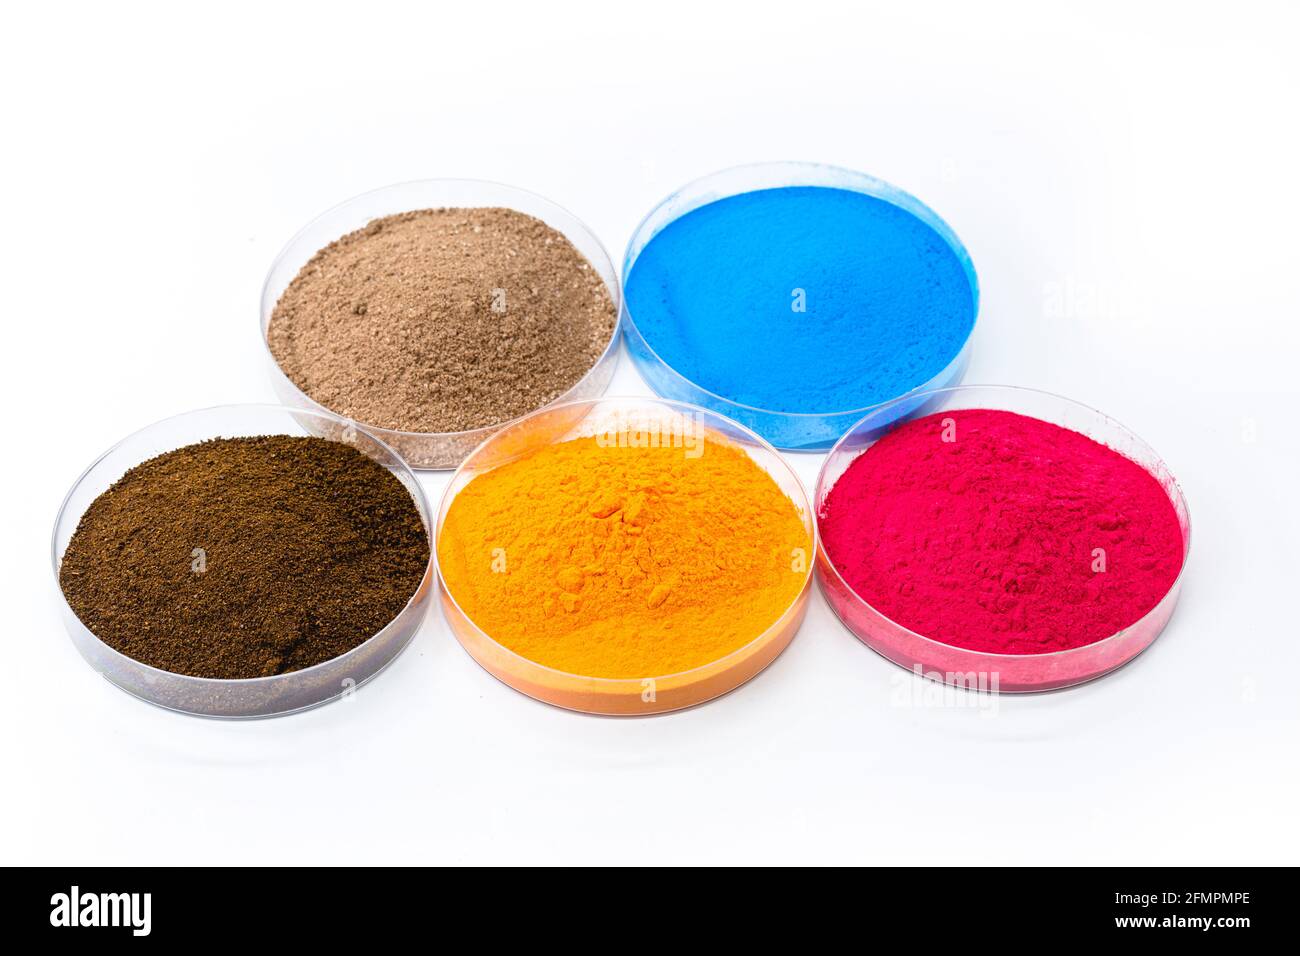 pigmentos coloreados, óxidos de hierro utilizados como colorante, en naranja, azul y rosa Foto de stock